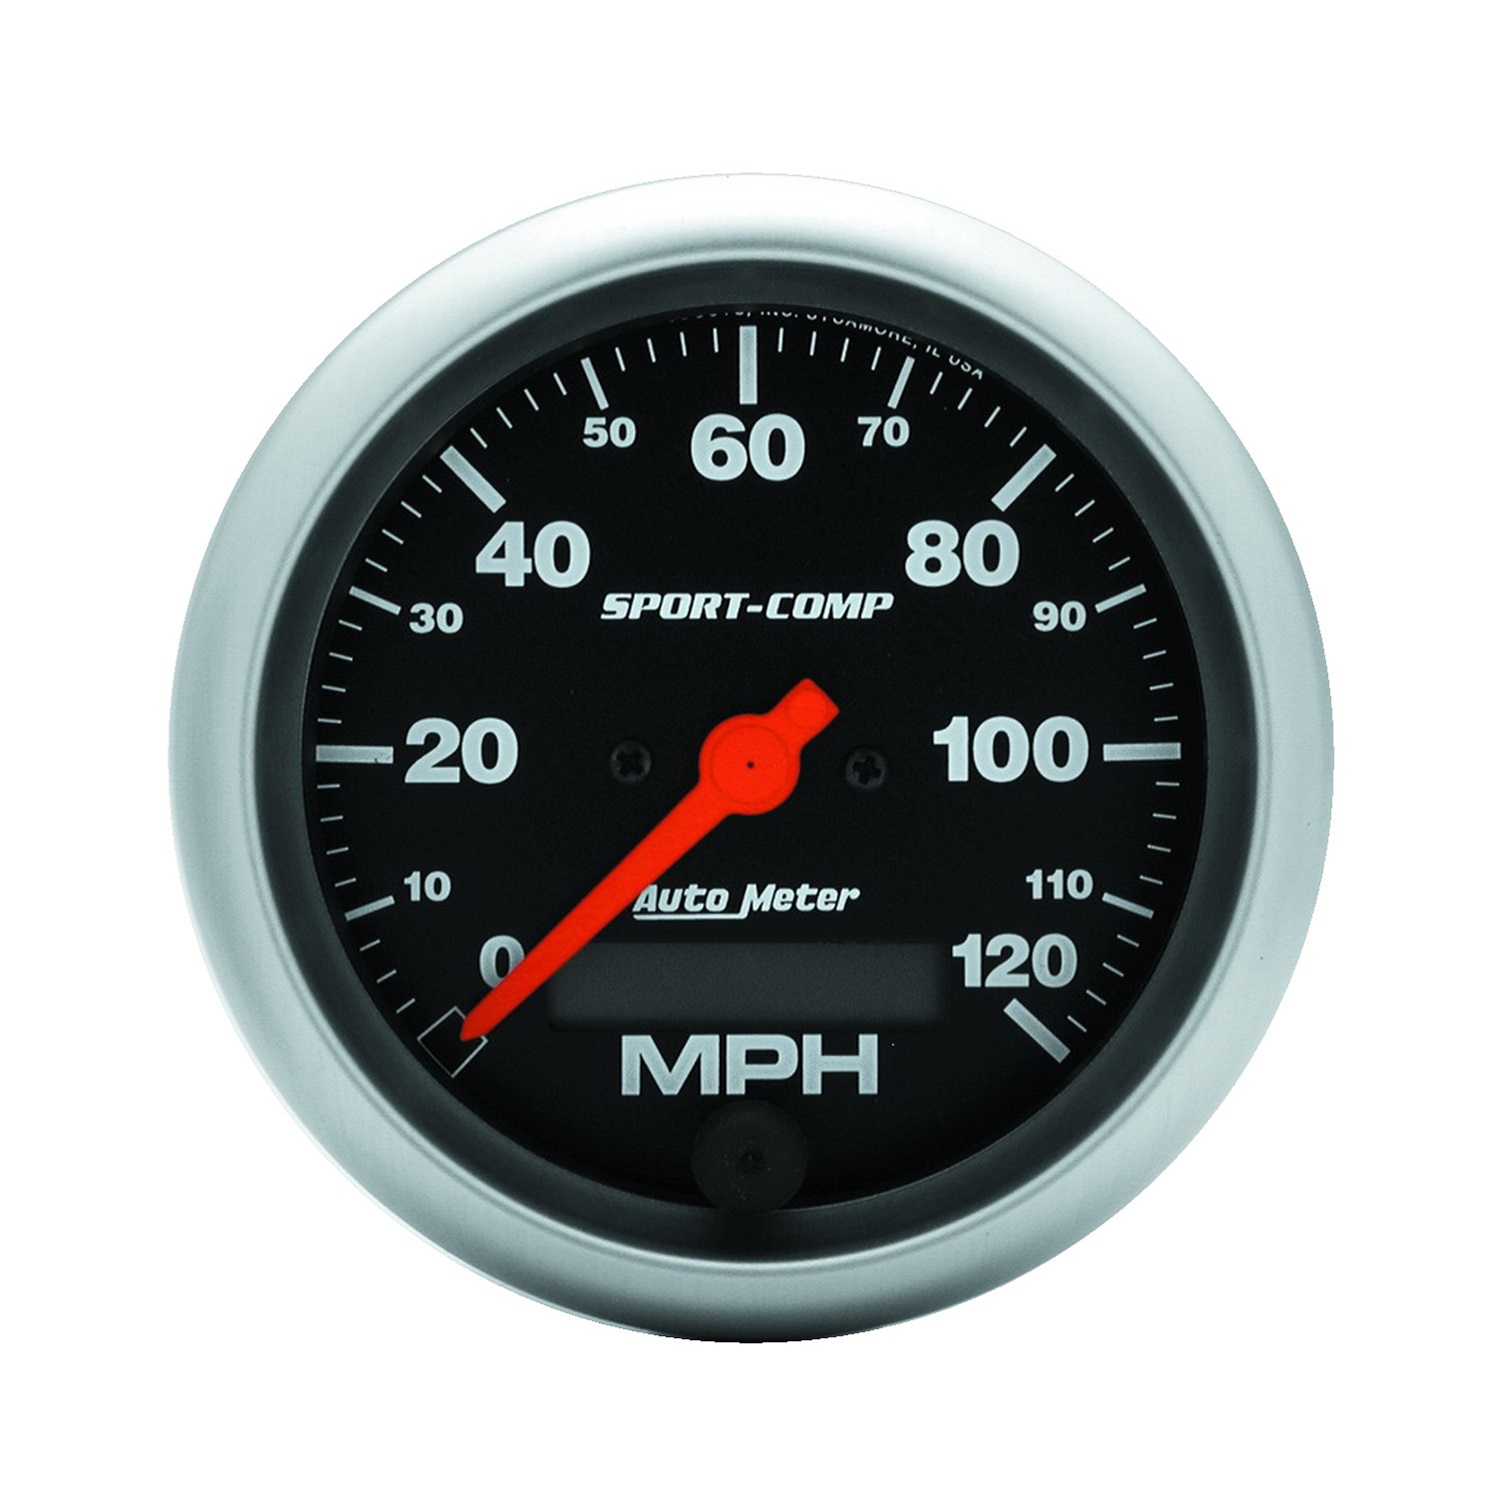 Auto Meter Auto Meter 3987 Sport-Comp; Electric Programmable Speedometer